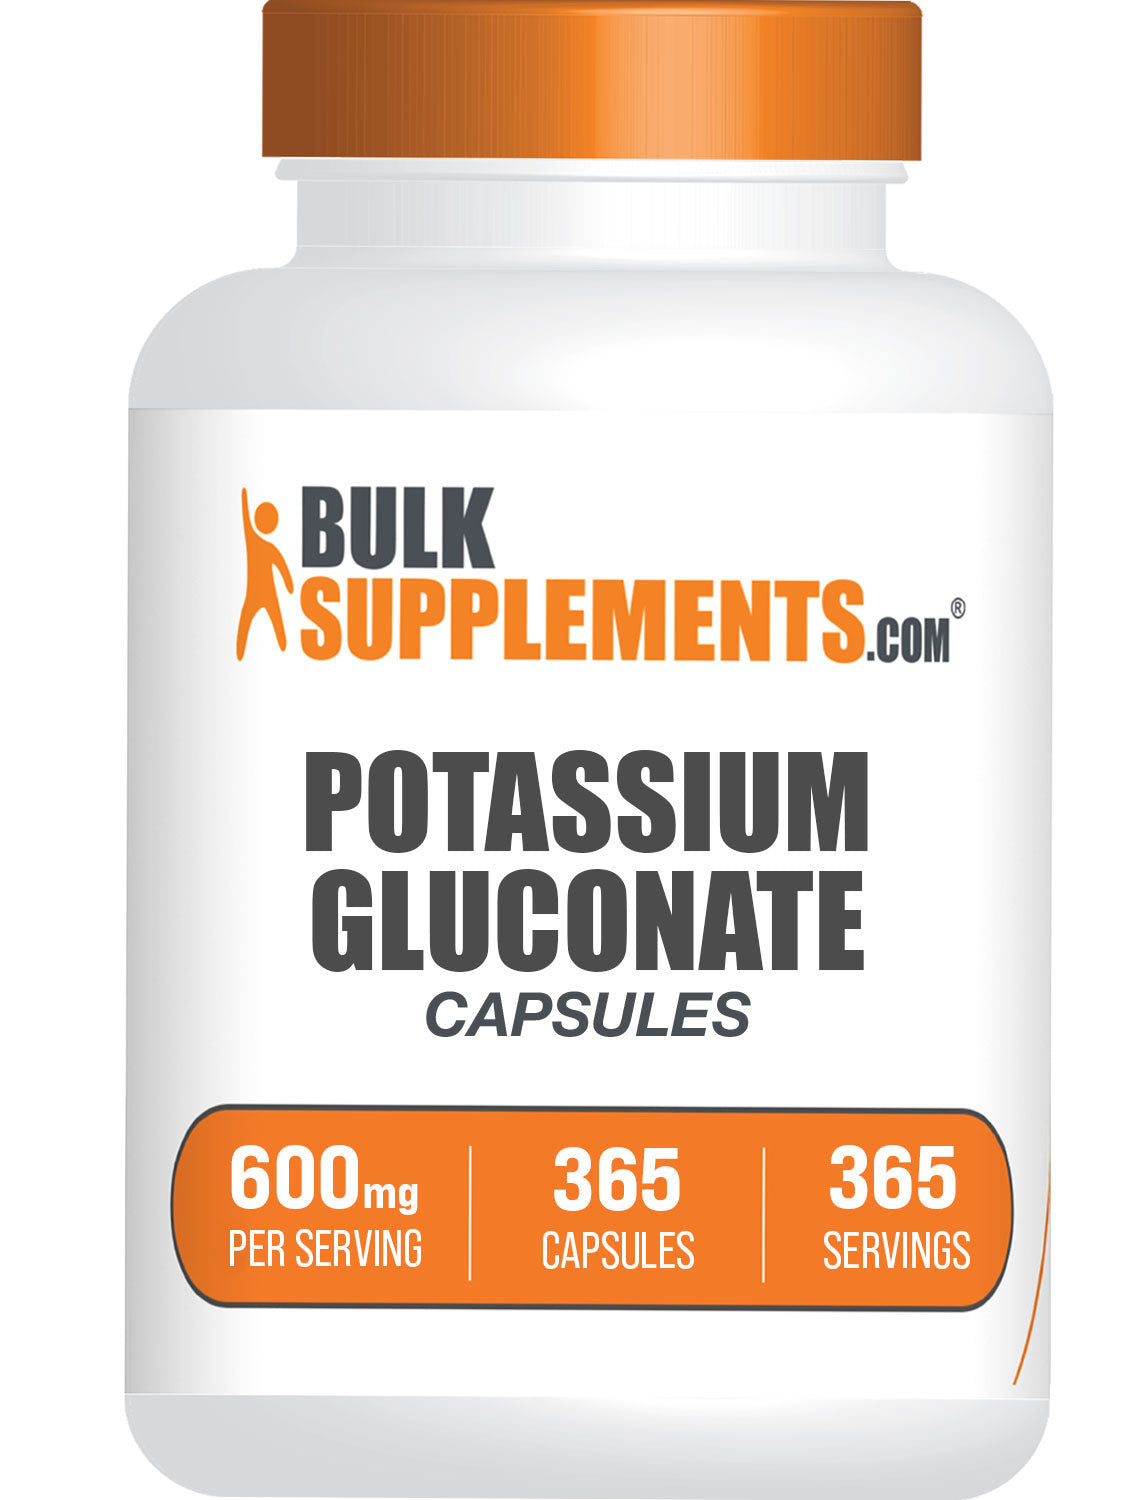 Potassium Gluconate Capsules 365 ct bottle